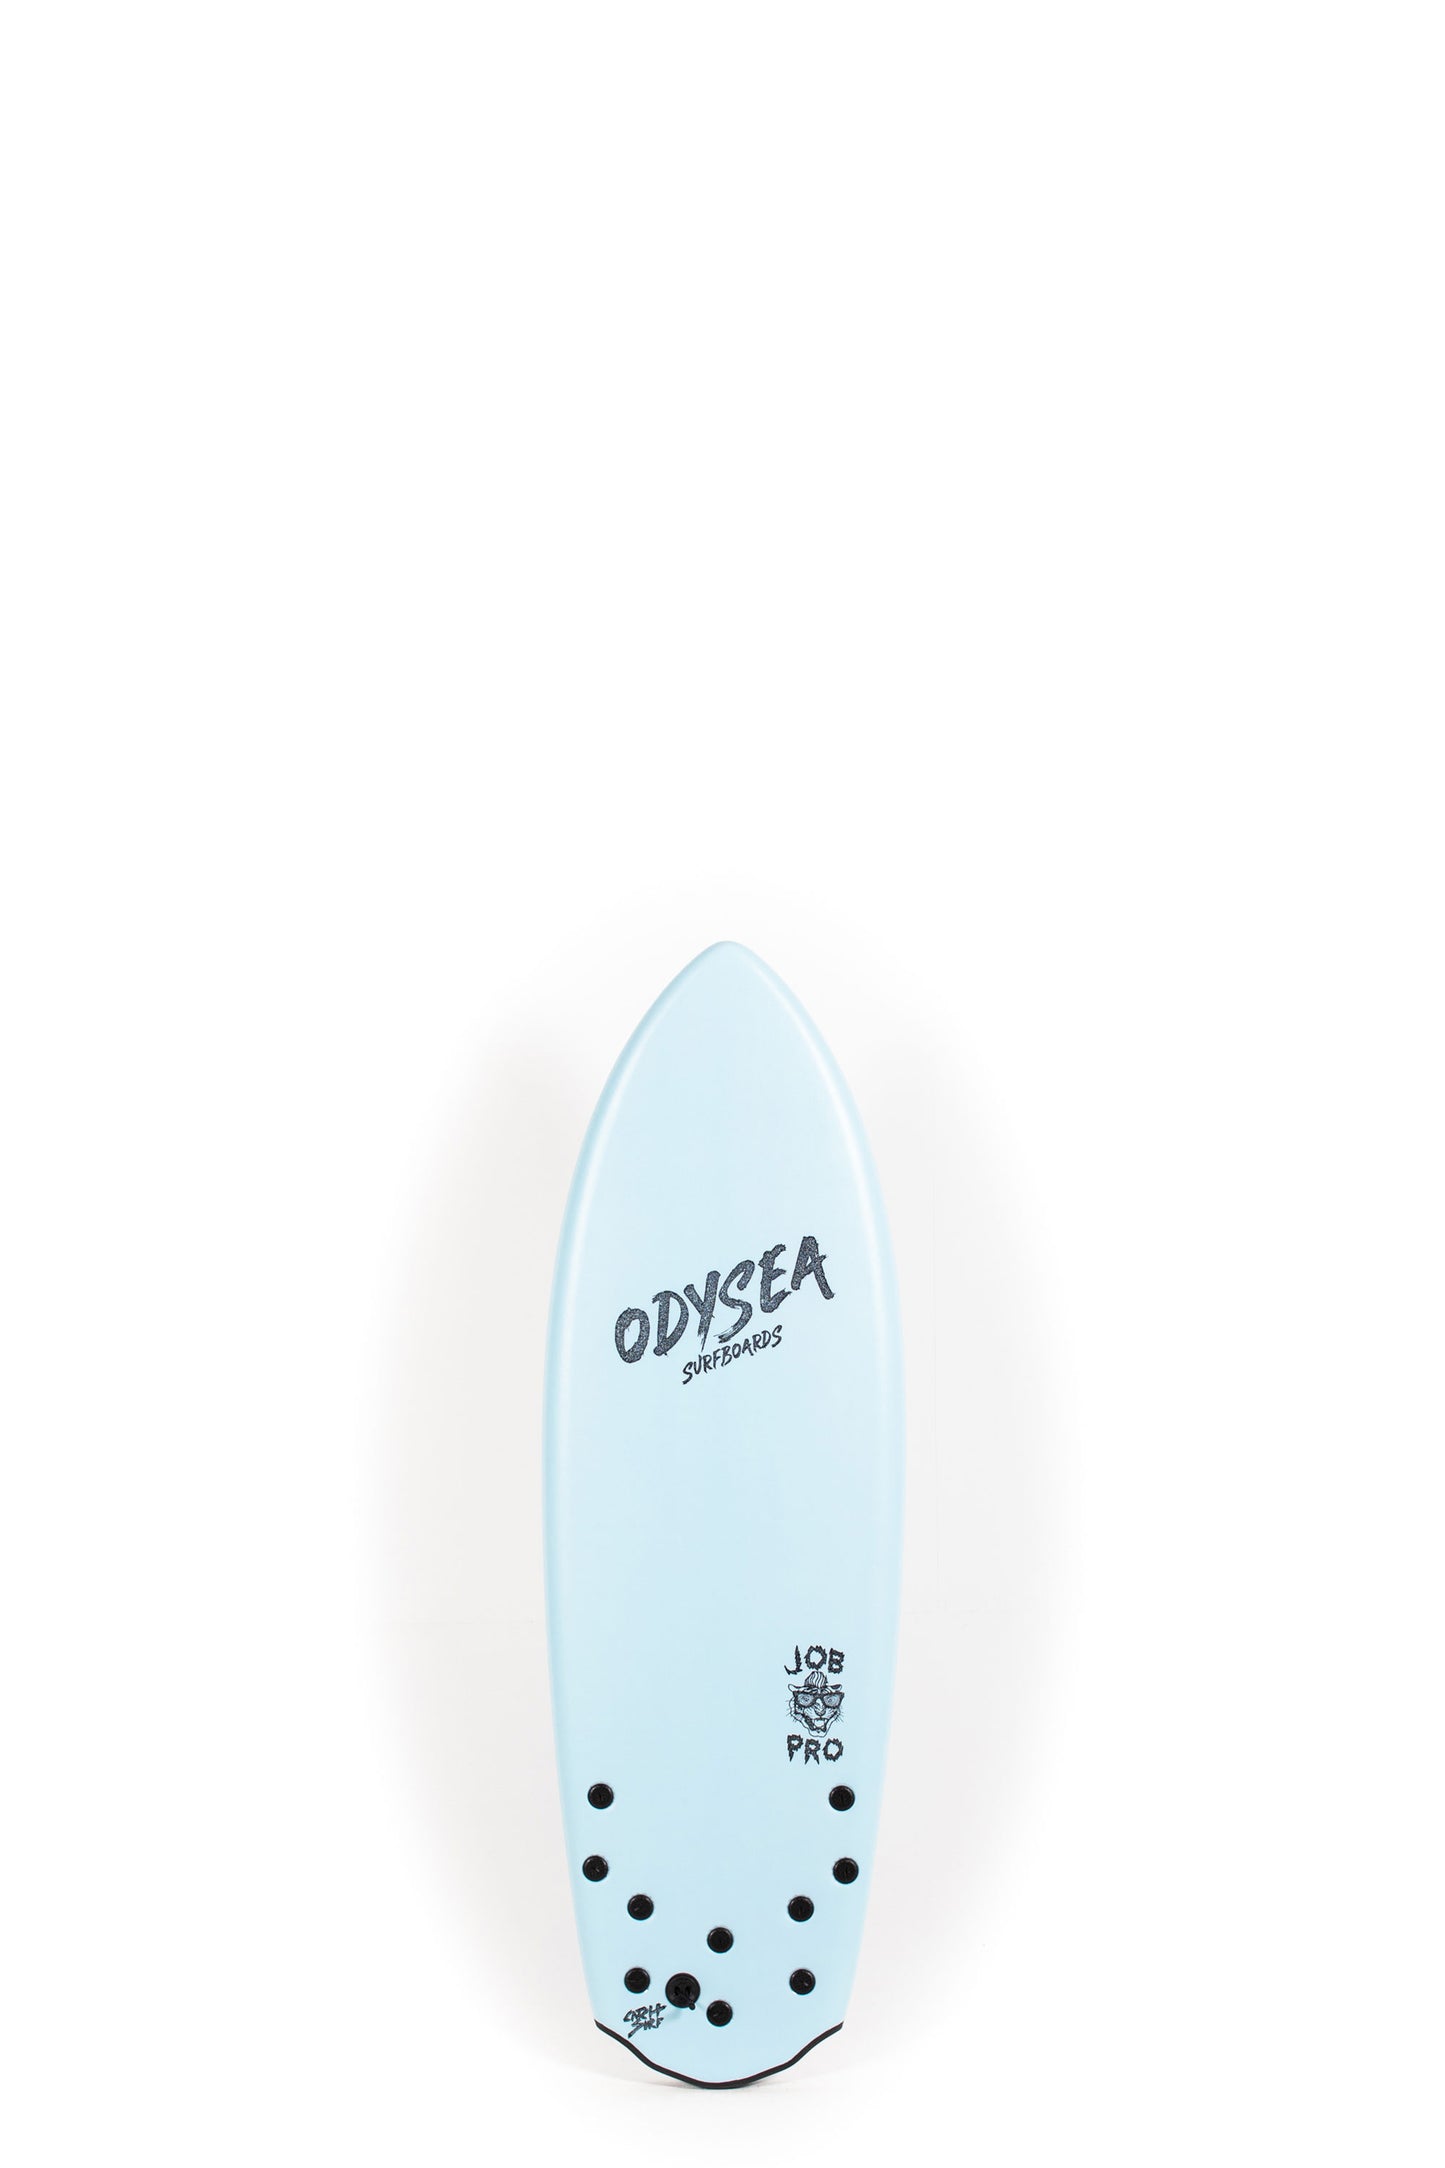 Pukas-Surf-Shop-Catch-Surfboards-Odysea-Five-FIn